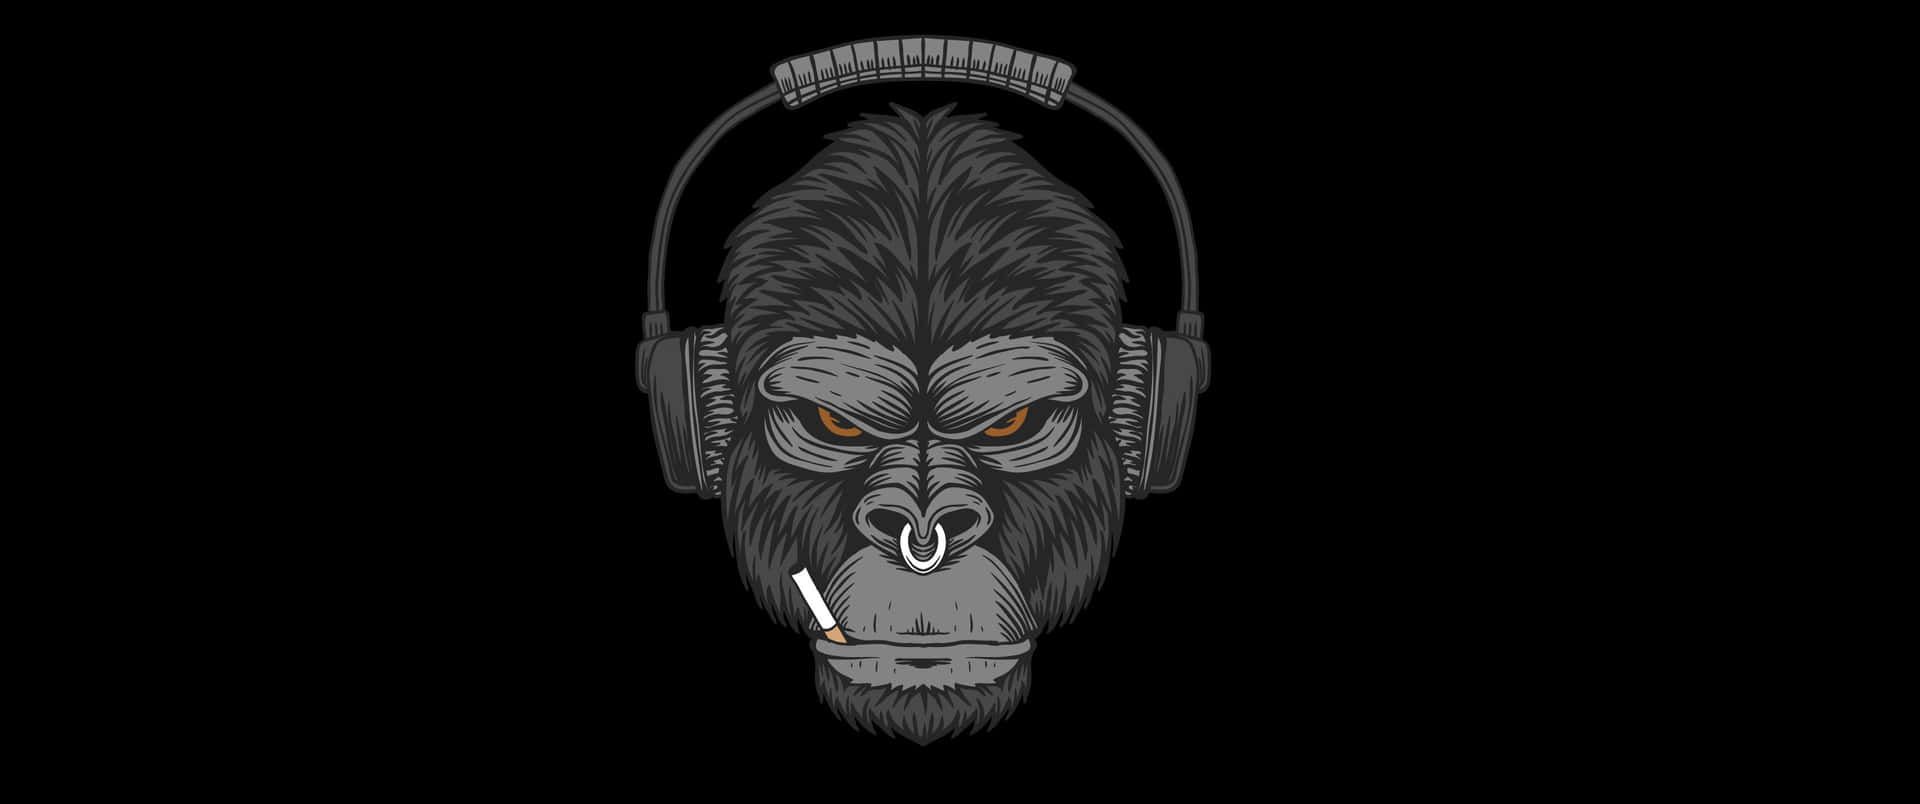 3440x1440p Gorilla With Cigarette Background